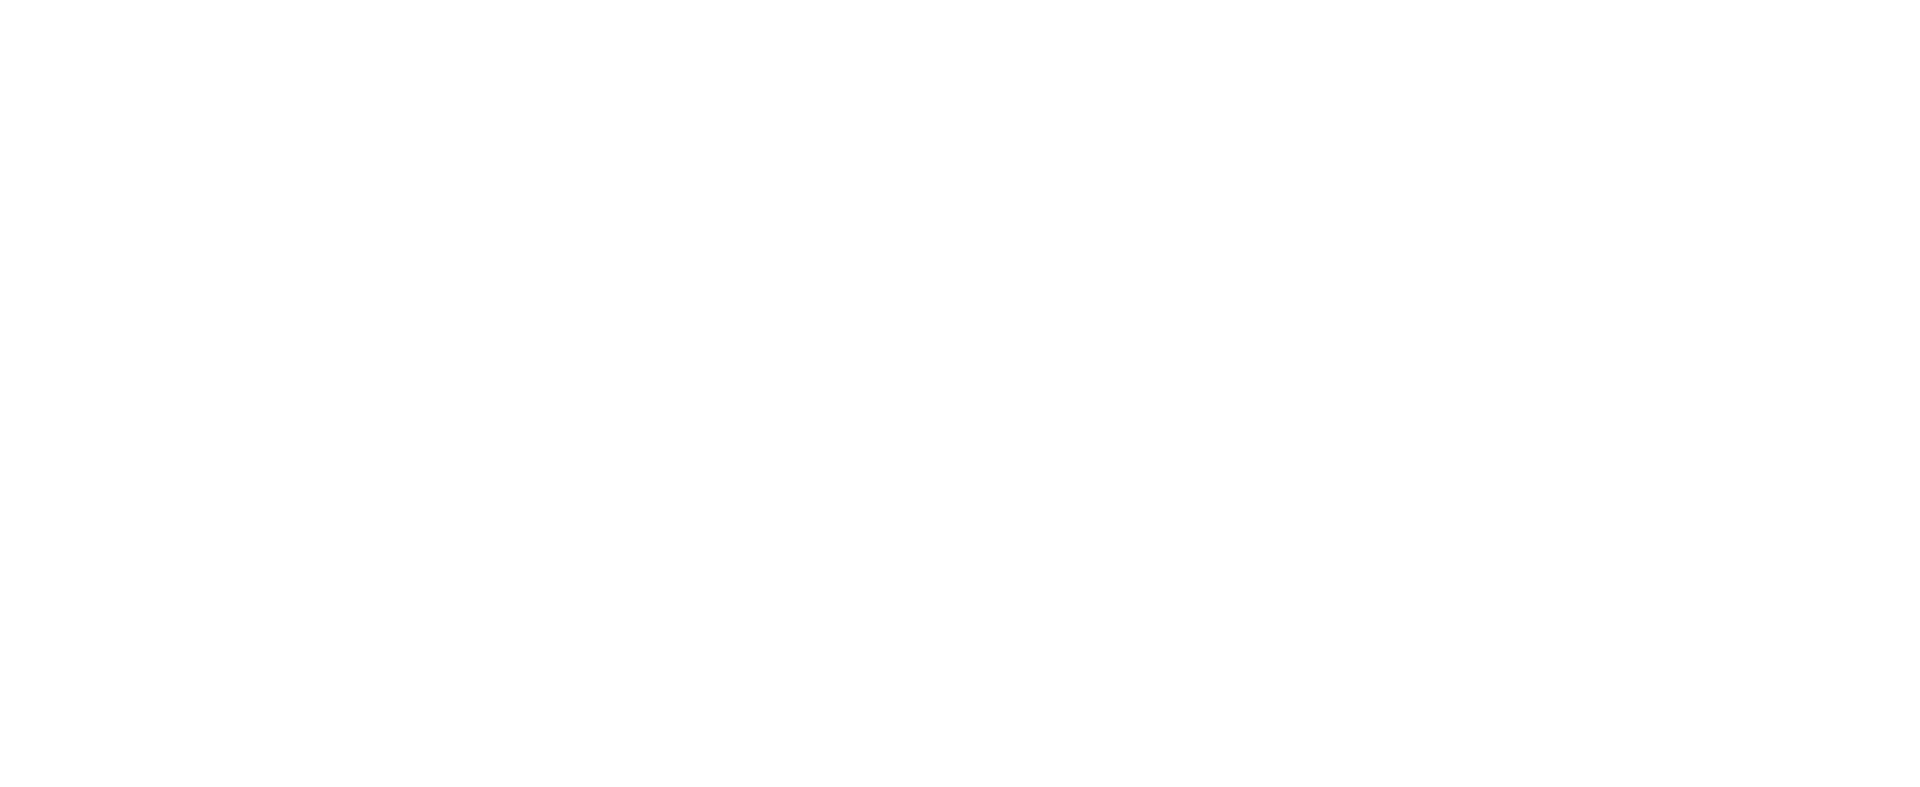 Judge Karen Herman for 4th Circuit Court of Appeal